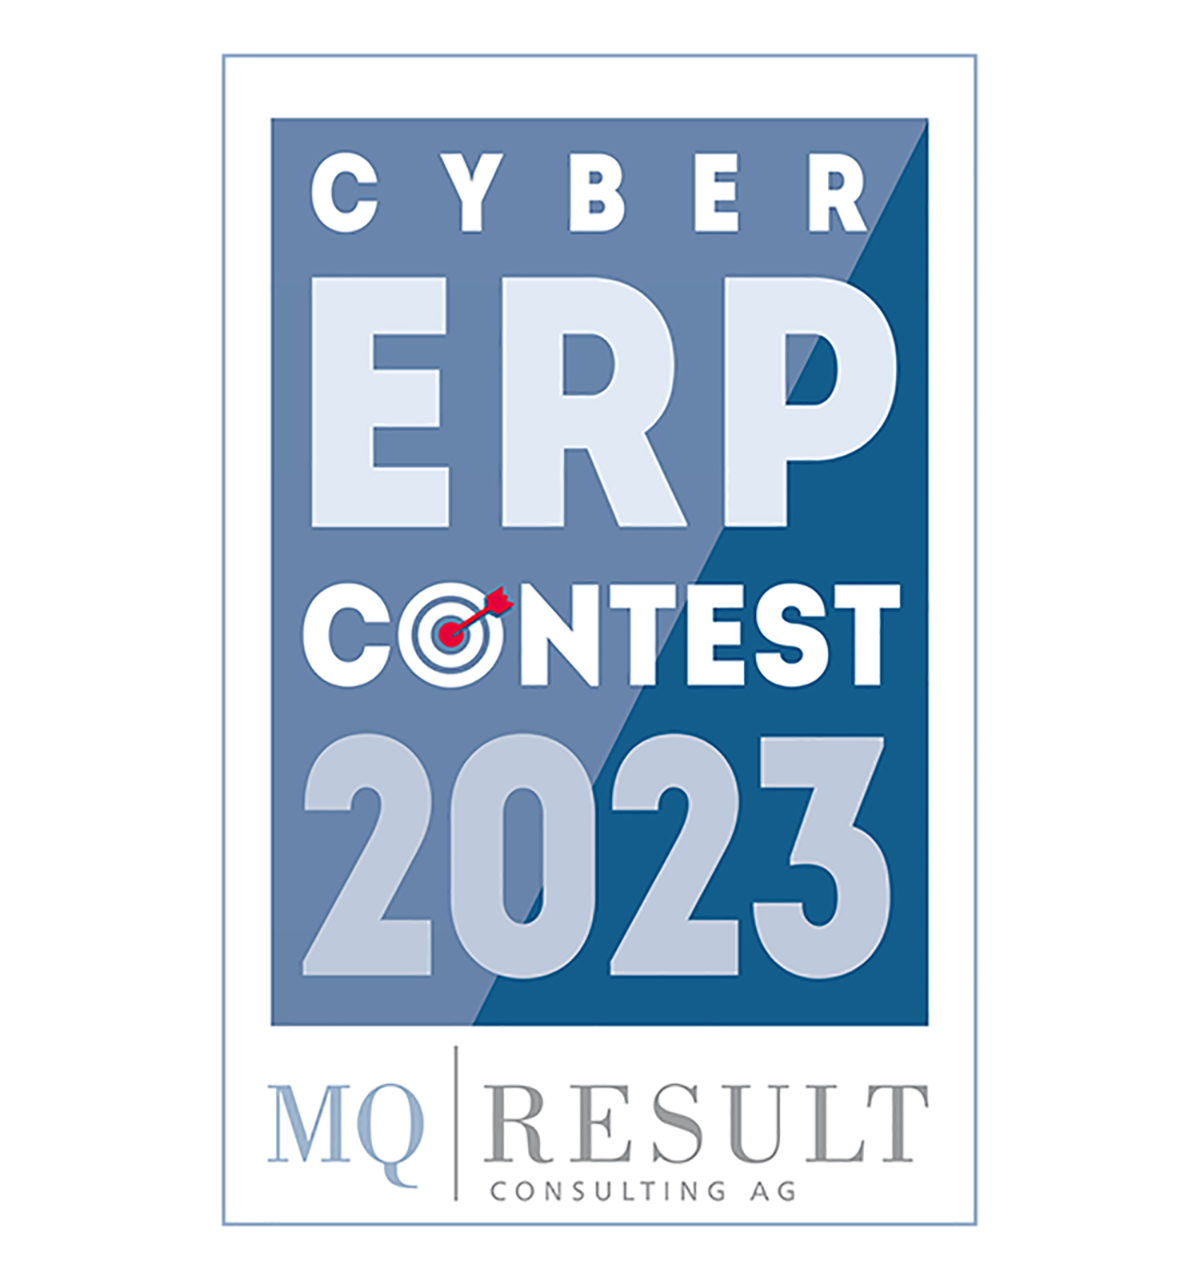 Am Freitag, 26.05.2023, beginnt um 10.00 Uhr der 1. Cyber ERP Contest 2023